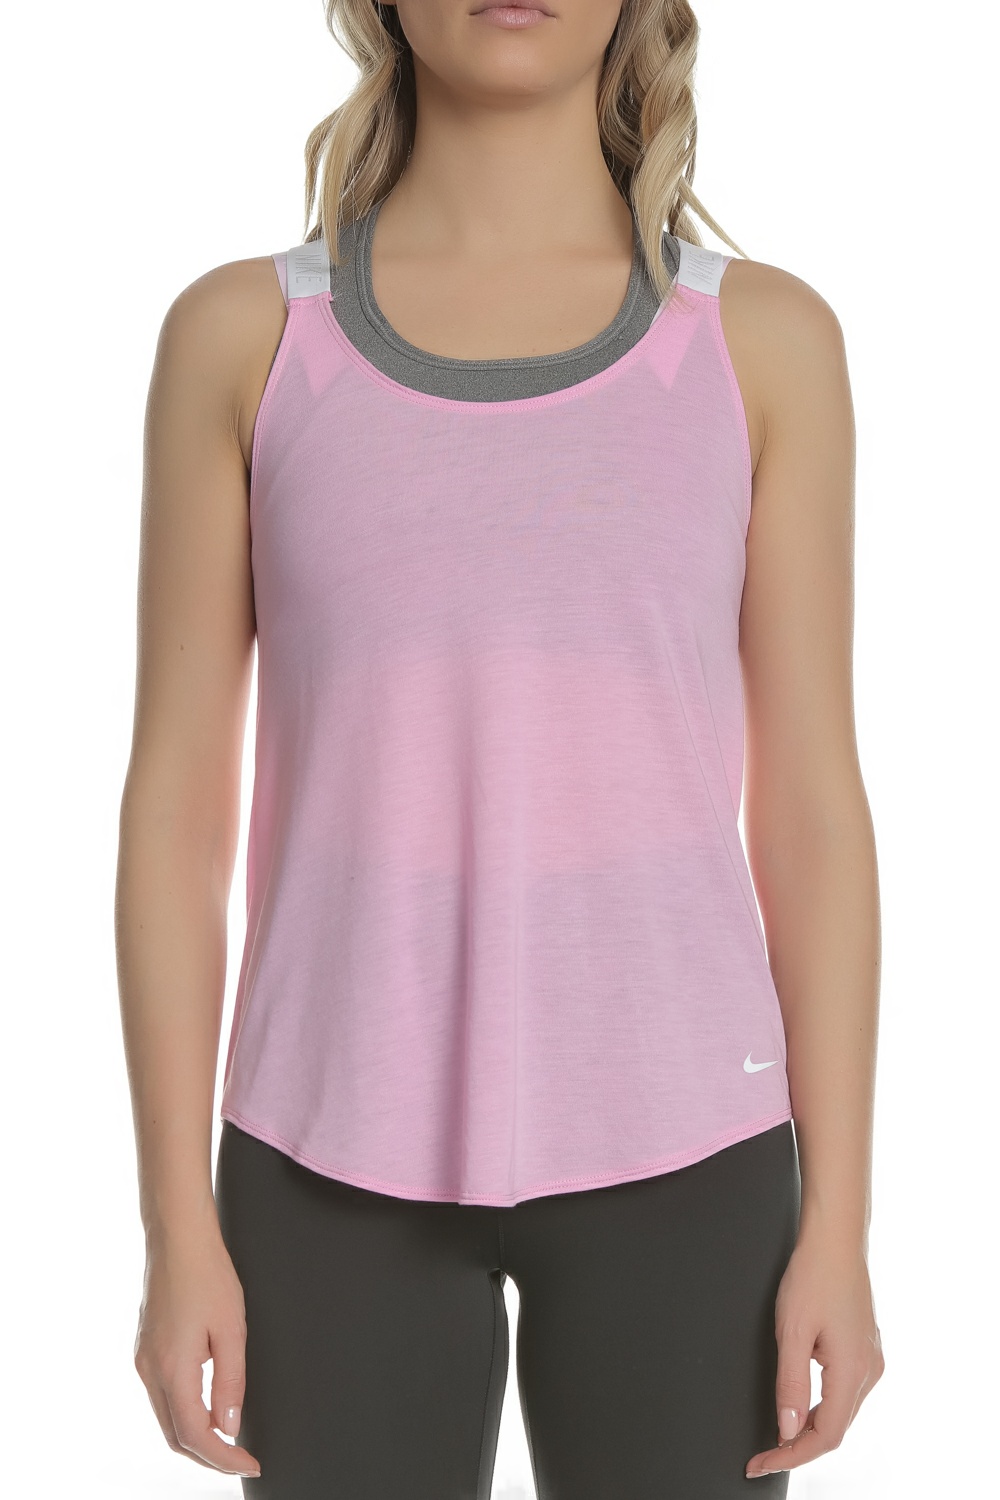 Γυναικεία/Ρούχα/Αθλητικά/T-shirt-Τοπ NIKE - Γυναικεία αμάνικη μπλούζα Nike Dri-FIT ροζ